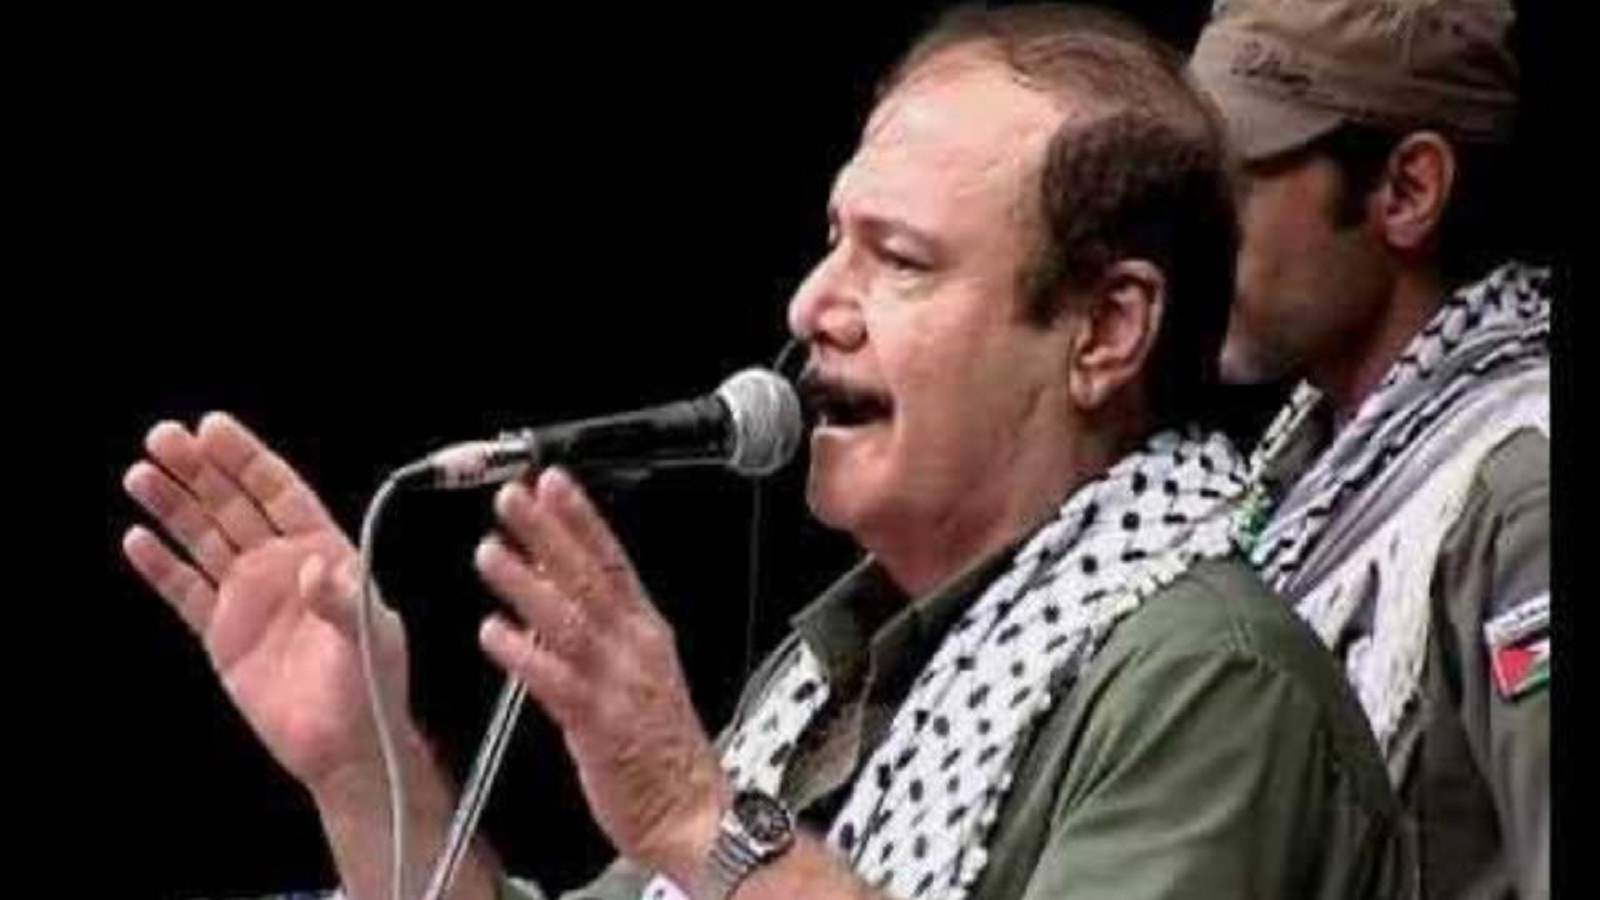 وفاة الفنان اللبناني حسين منذر بعد صراع مع المرض والجمهور ينعاه: مسيرة نبيلة وروح كبيرة